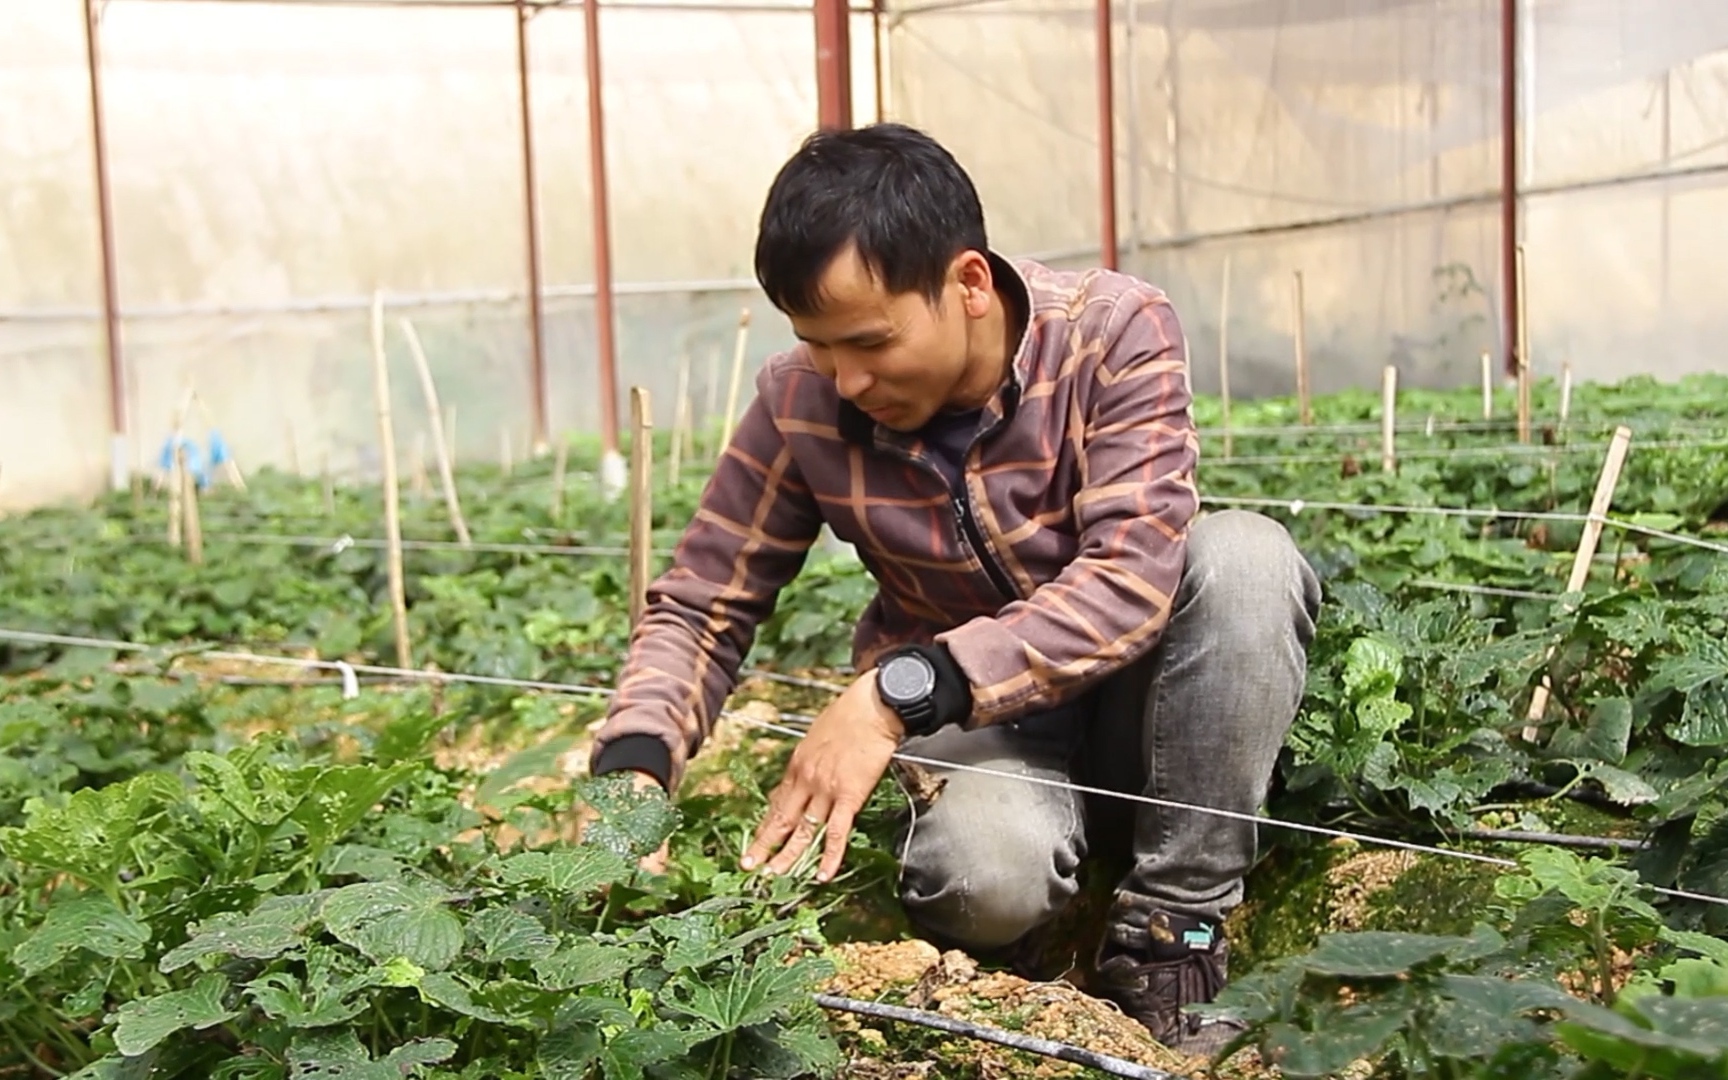 Trồng cây wasabi công nghệ cao bán 6 triệu đồng/kg, anh nông dân vẫn không có hàng để bán